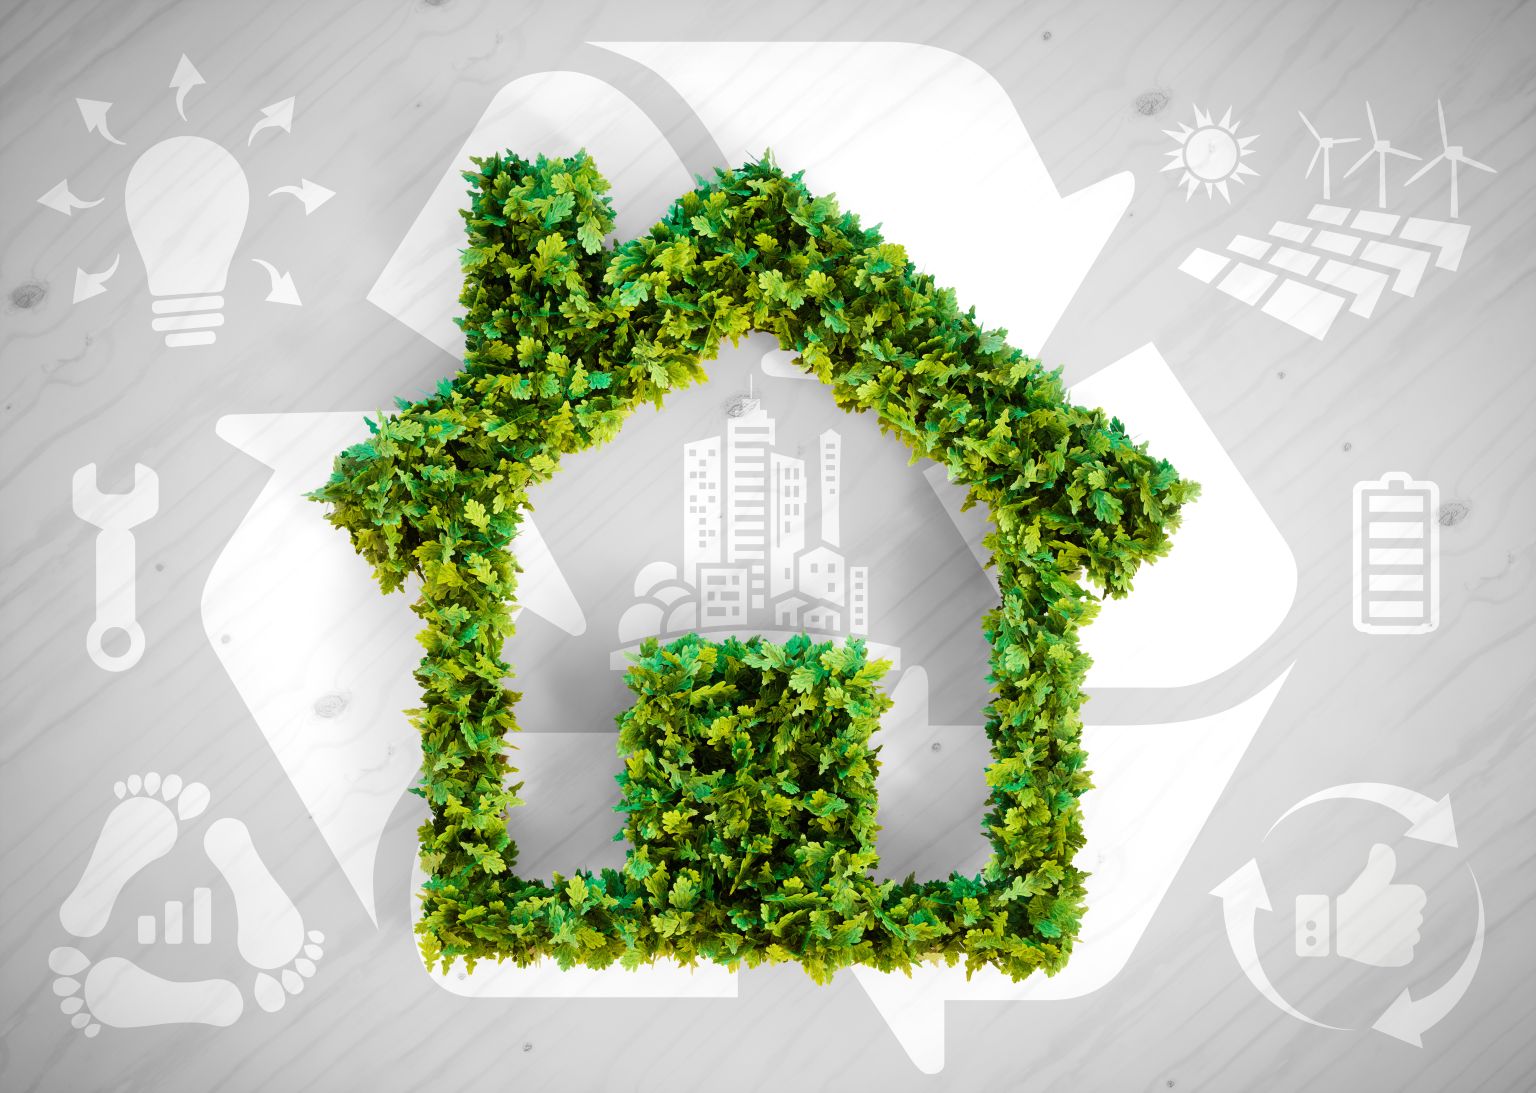 EU-Parlament will energieeffizientere Gebäude für mehr Klimaschutz